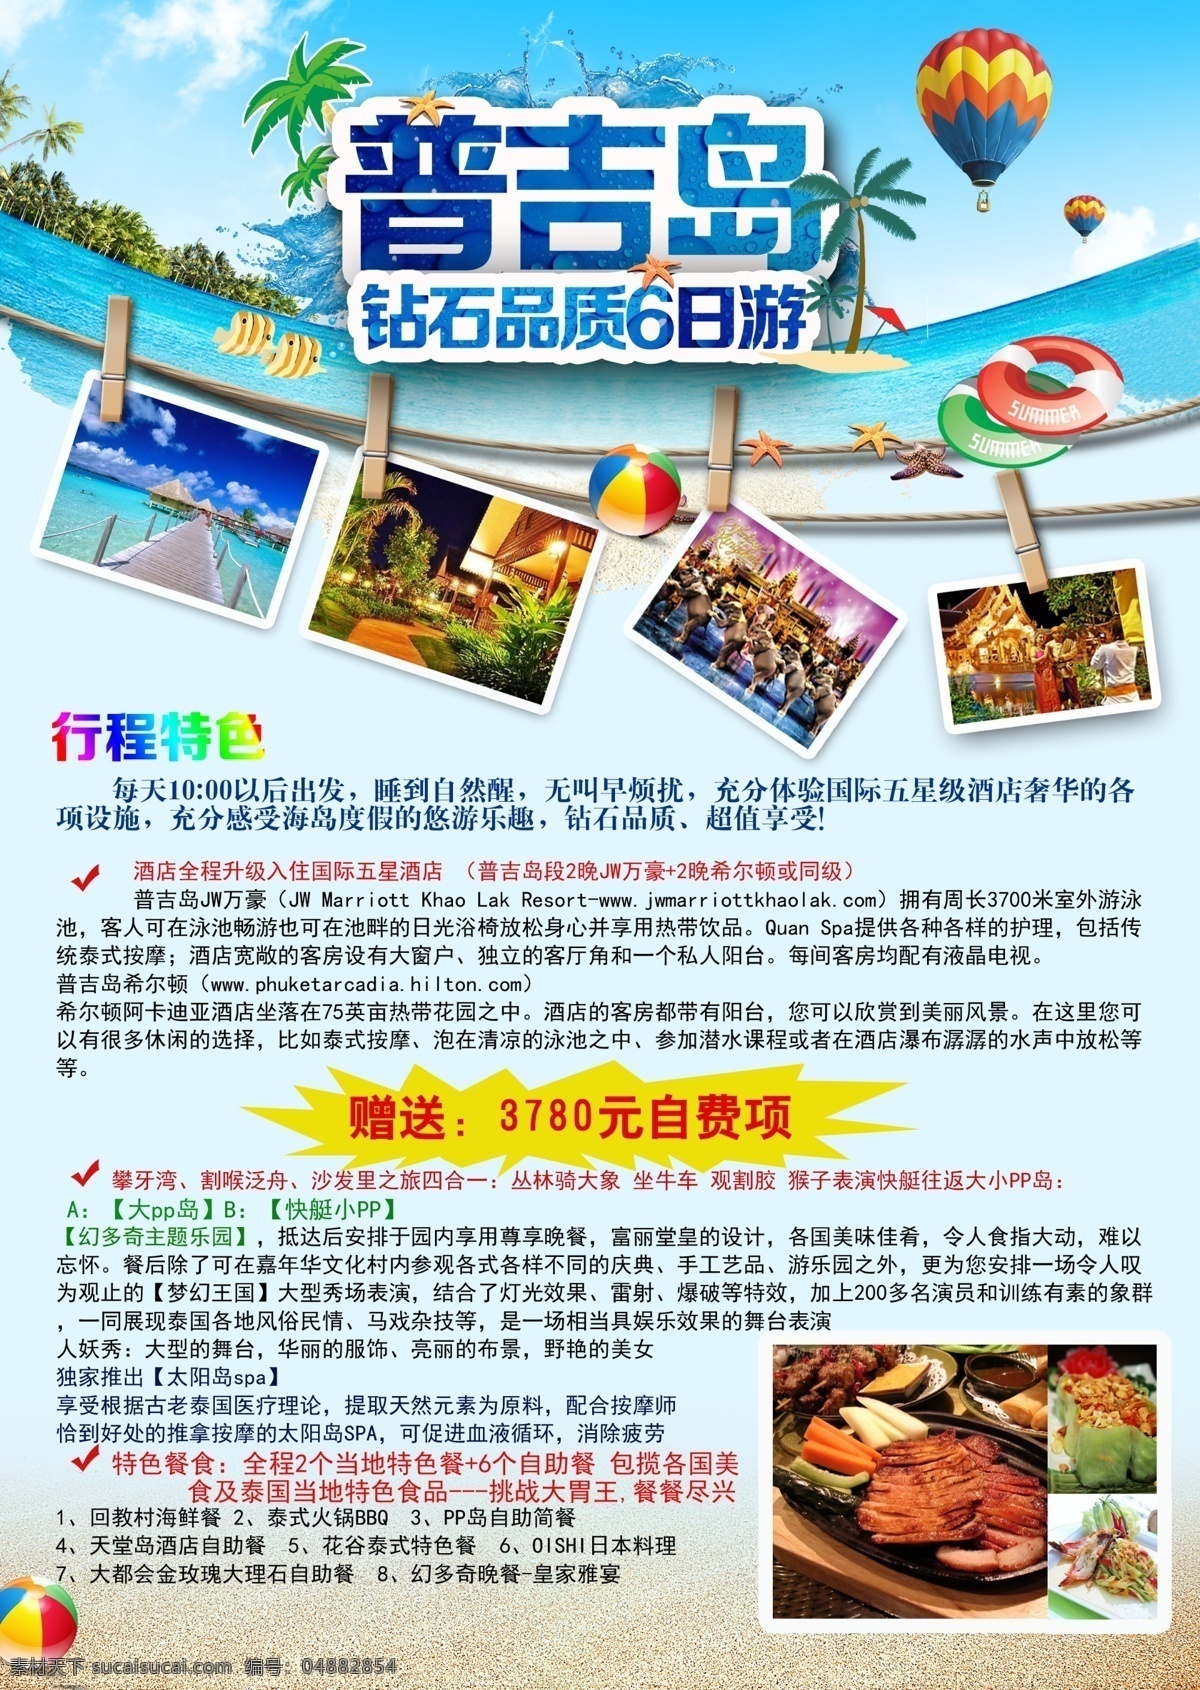 普吉岛 模版下载 行程单 旅游行程单 夏季出游 氢气球 大海 旅游特色 东南亚旅游 欧洲旅游 泰国旅游 新加坡旅游 广告设计模板 源文件